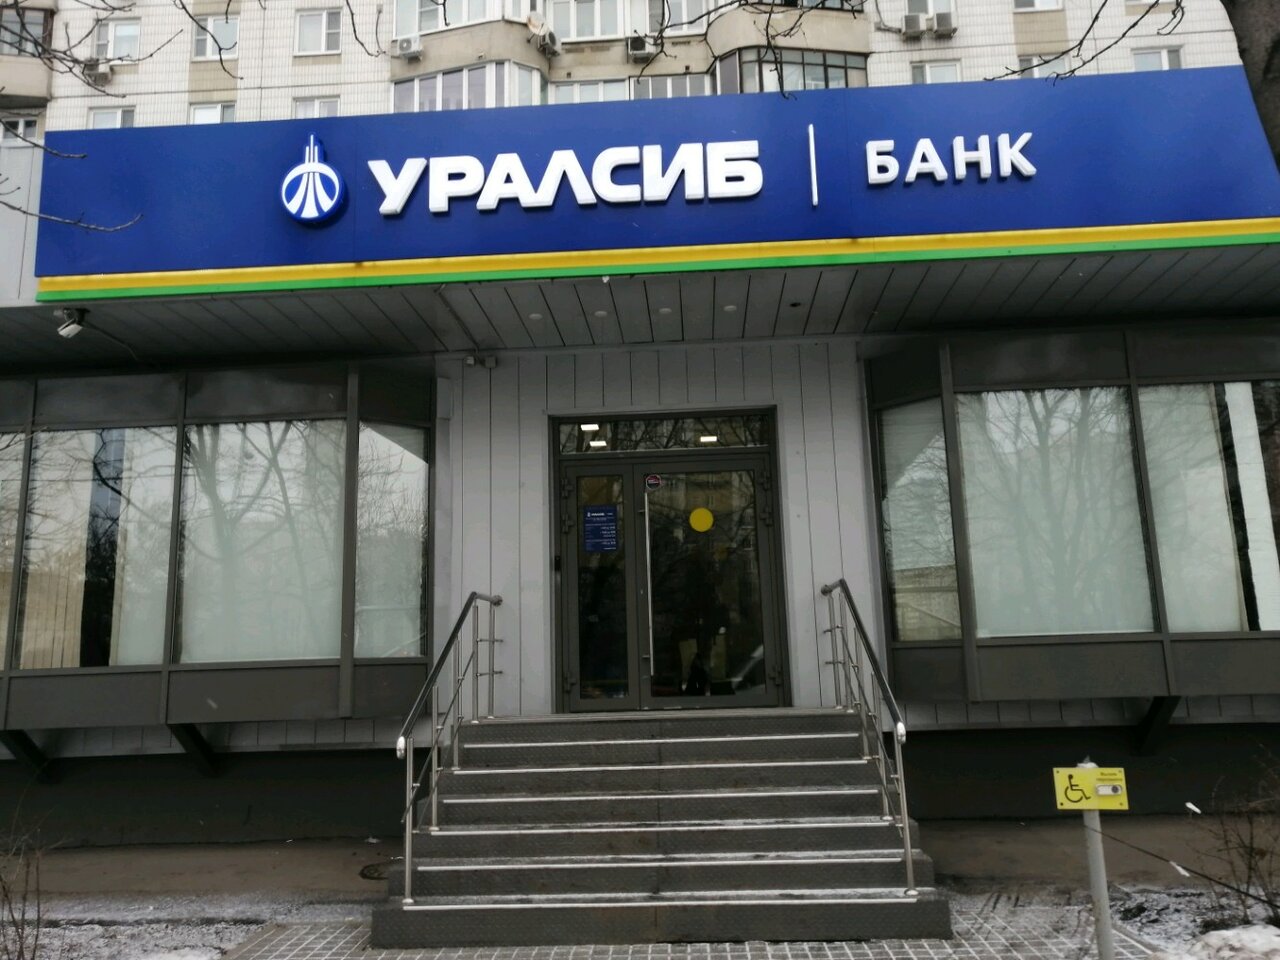 Обмен валюты в москве уралсиб банк пулы для соло майнинга биткоина